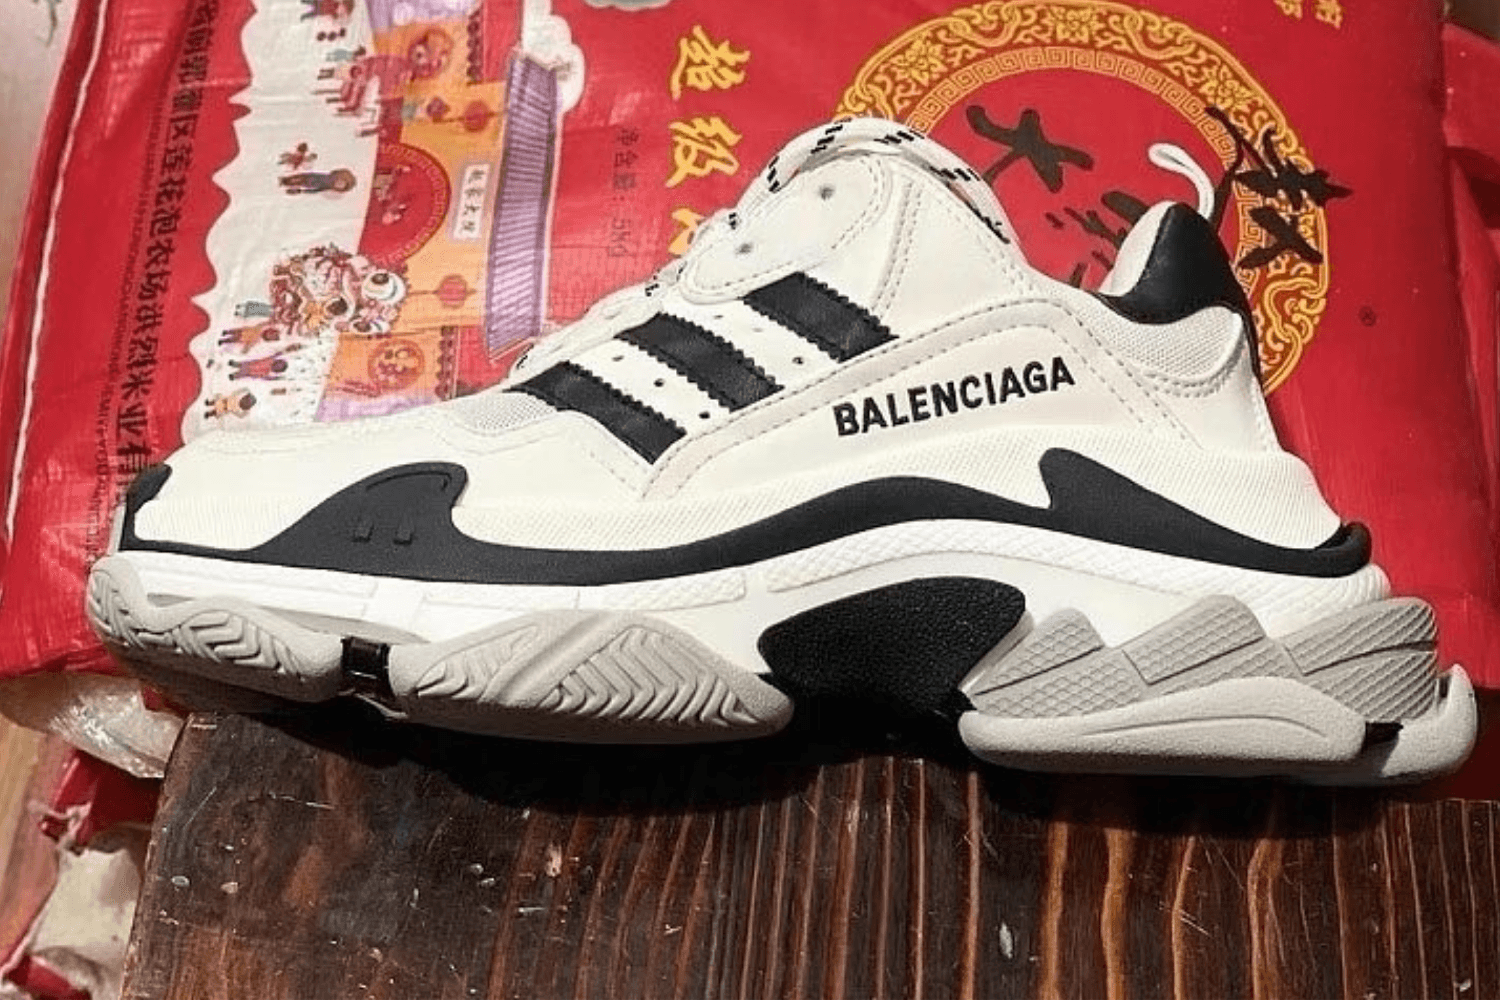 Eerste beelden van de adidas x Balenciaga Triple S zijn verschenen